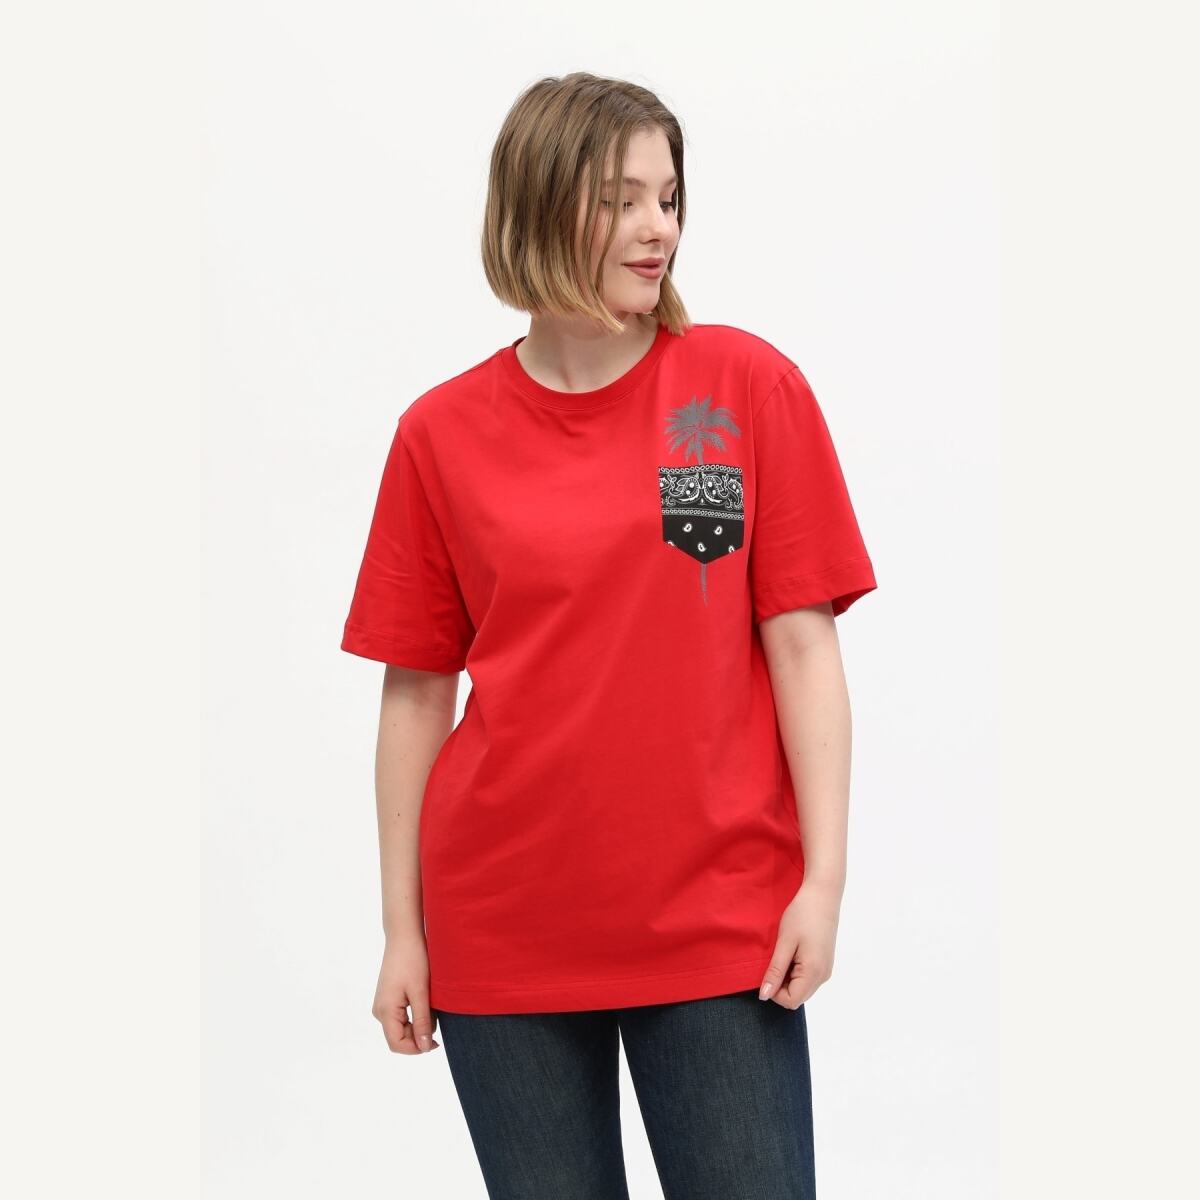 Kadın Kırmızı %100 Pamuk Baskılı Oversize Dik Yaka Örme T-Shirt